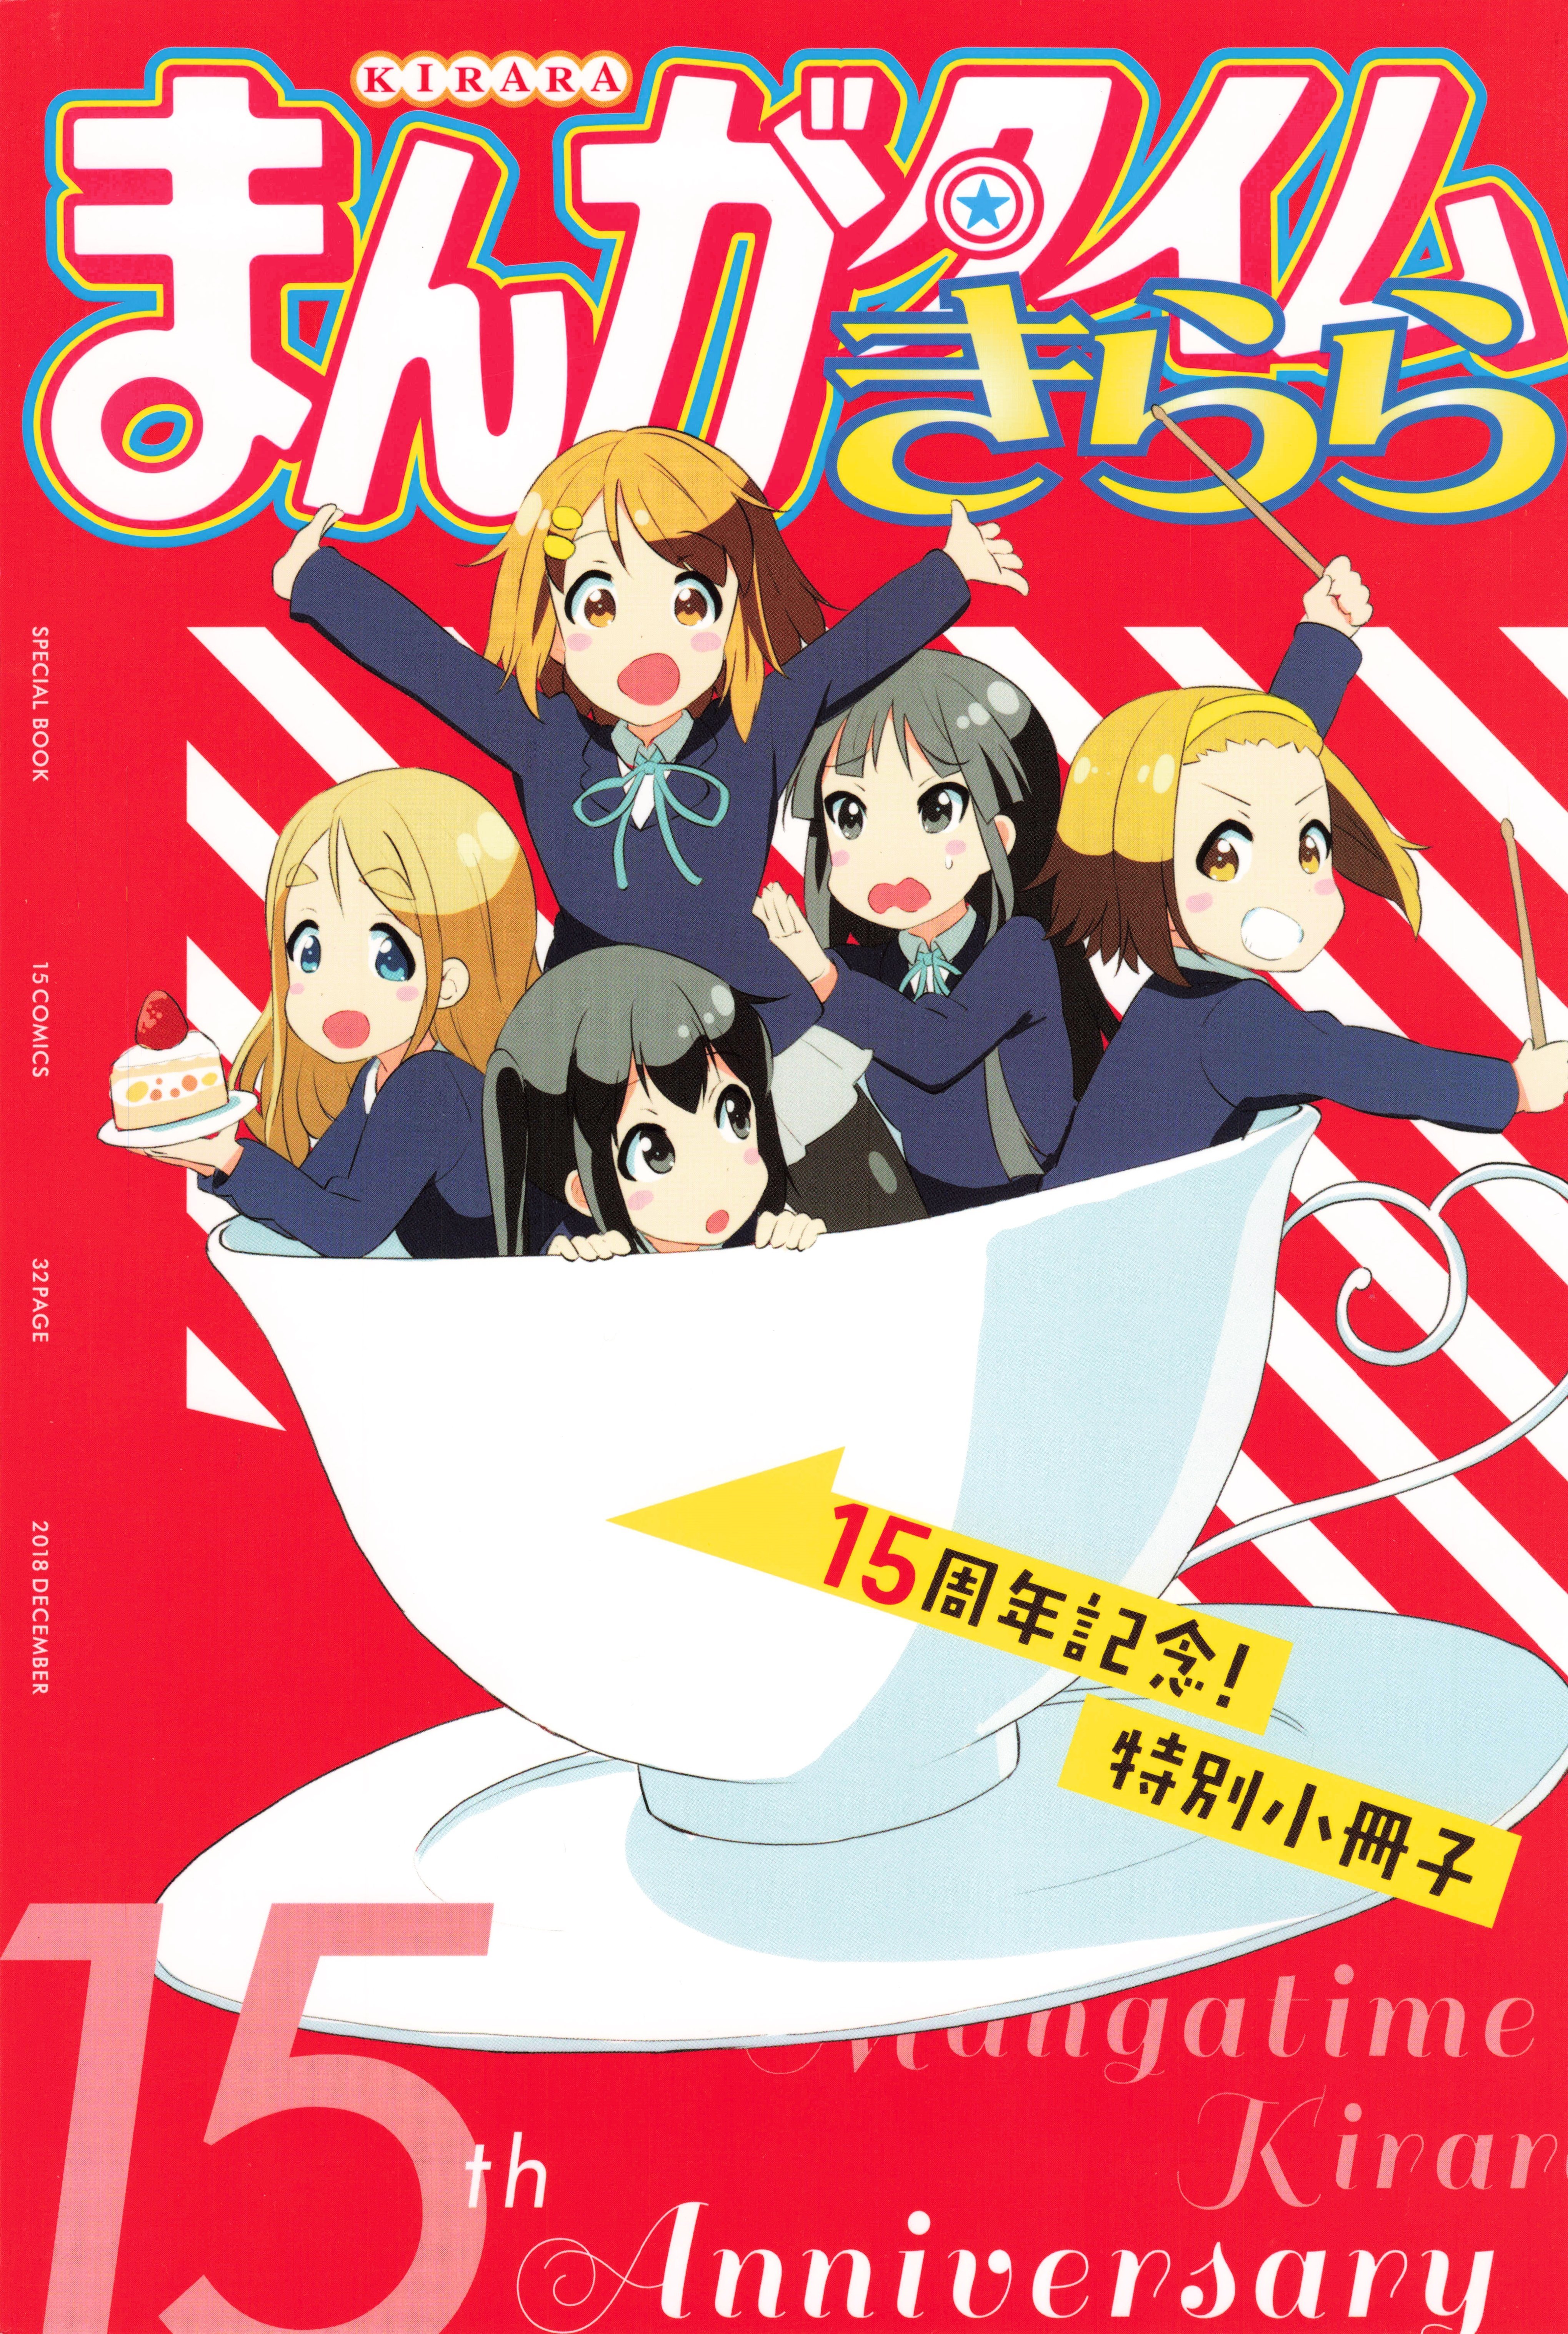 Manga time Kirara 15th Anniversary Special Book